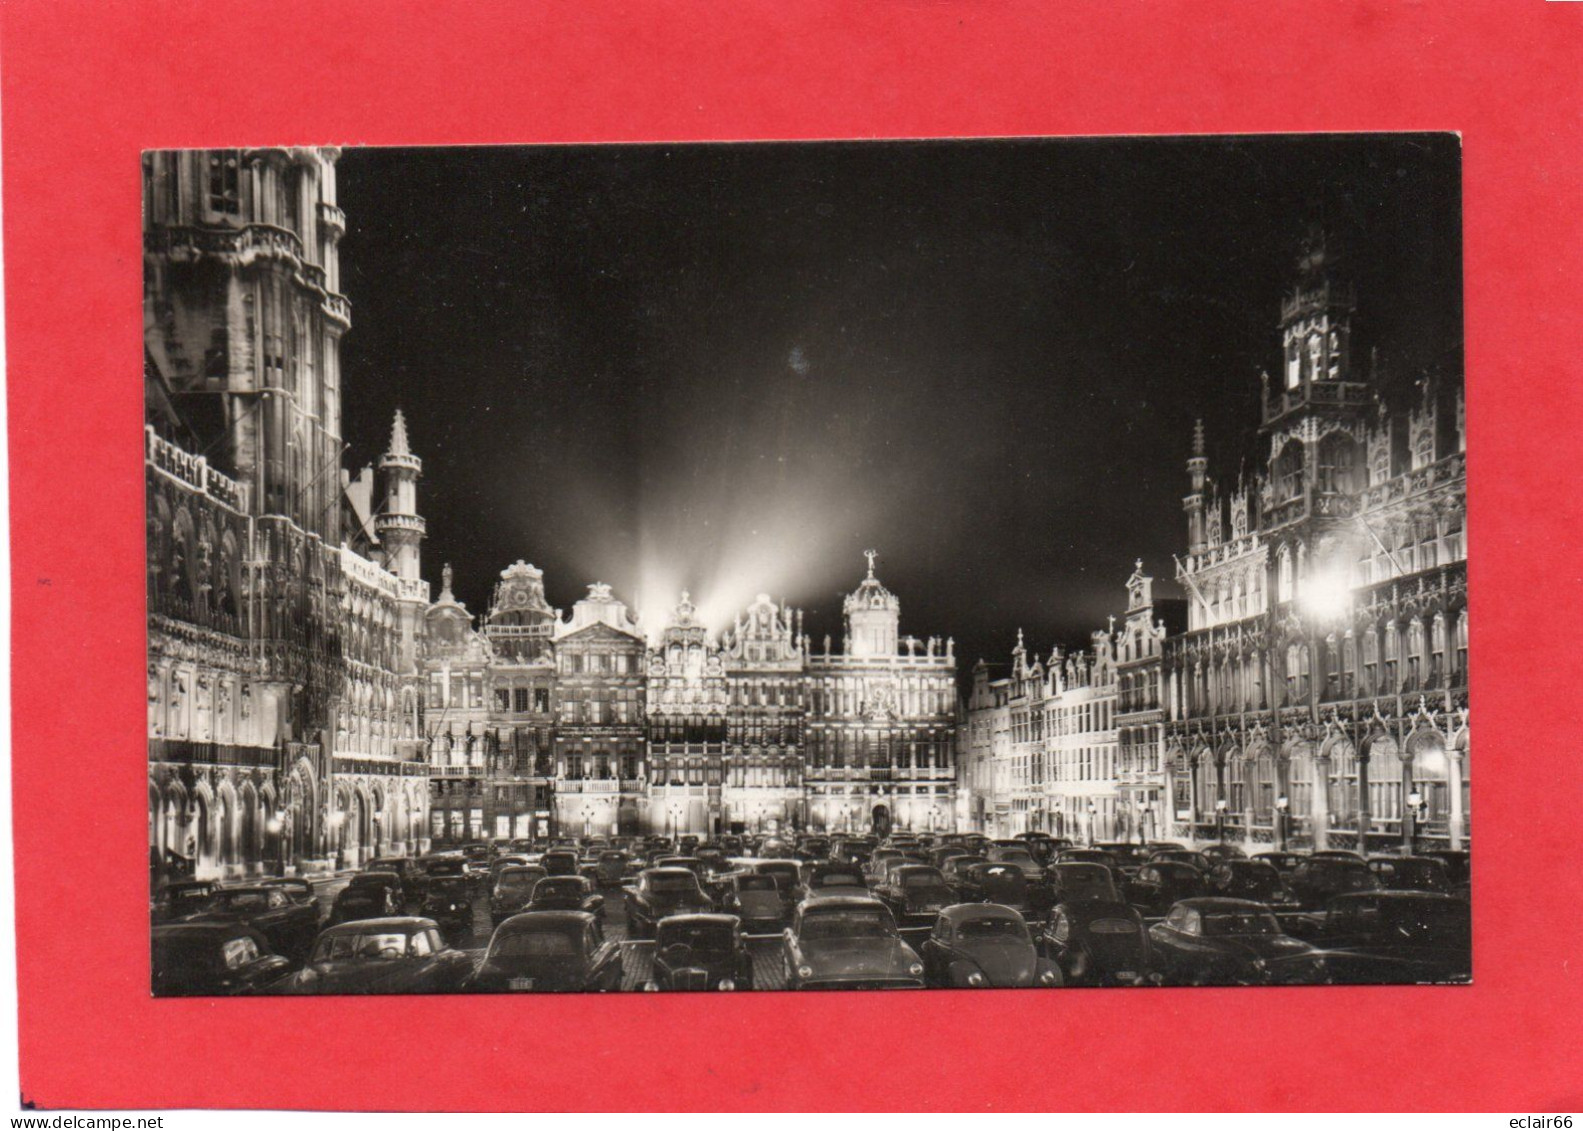 BRUXELLES Grand Place La Nuit CPSM  PFormat Année 1965  Edit Fotoprim  N° 41 - Brussel Bij Nacht